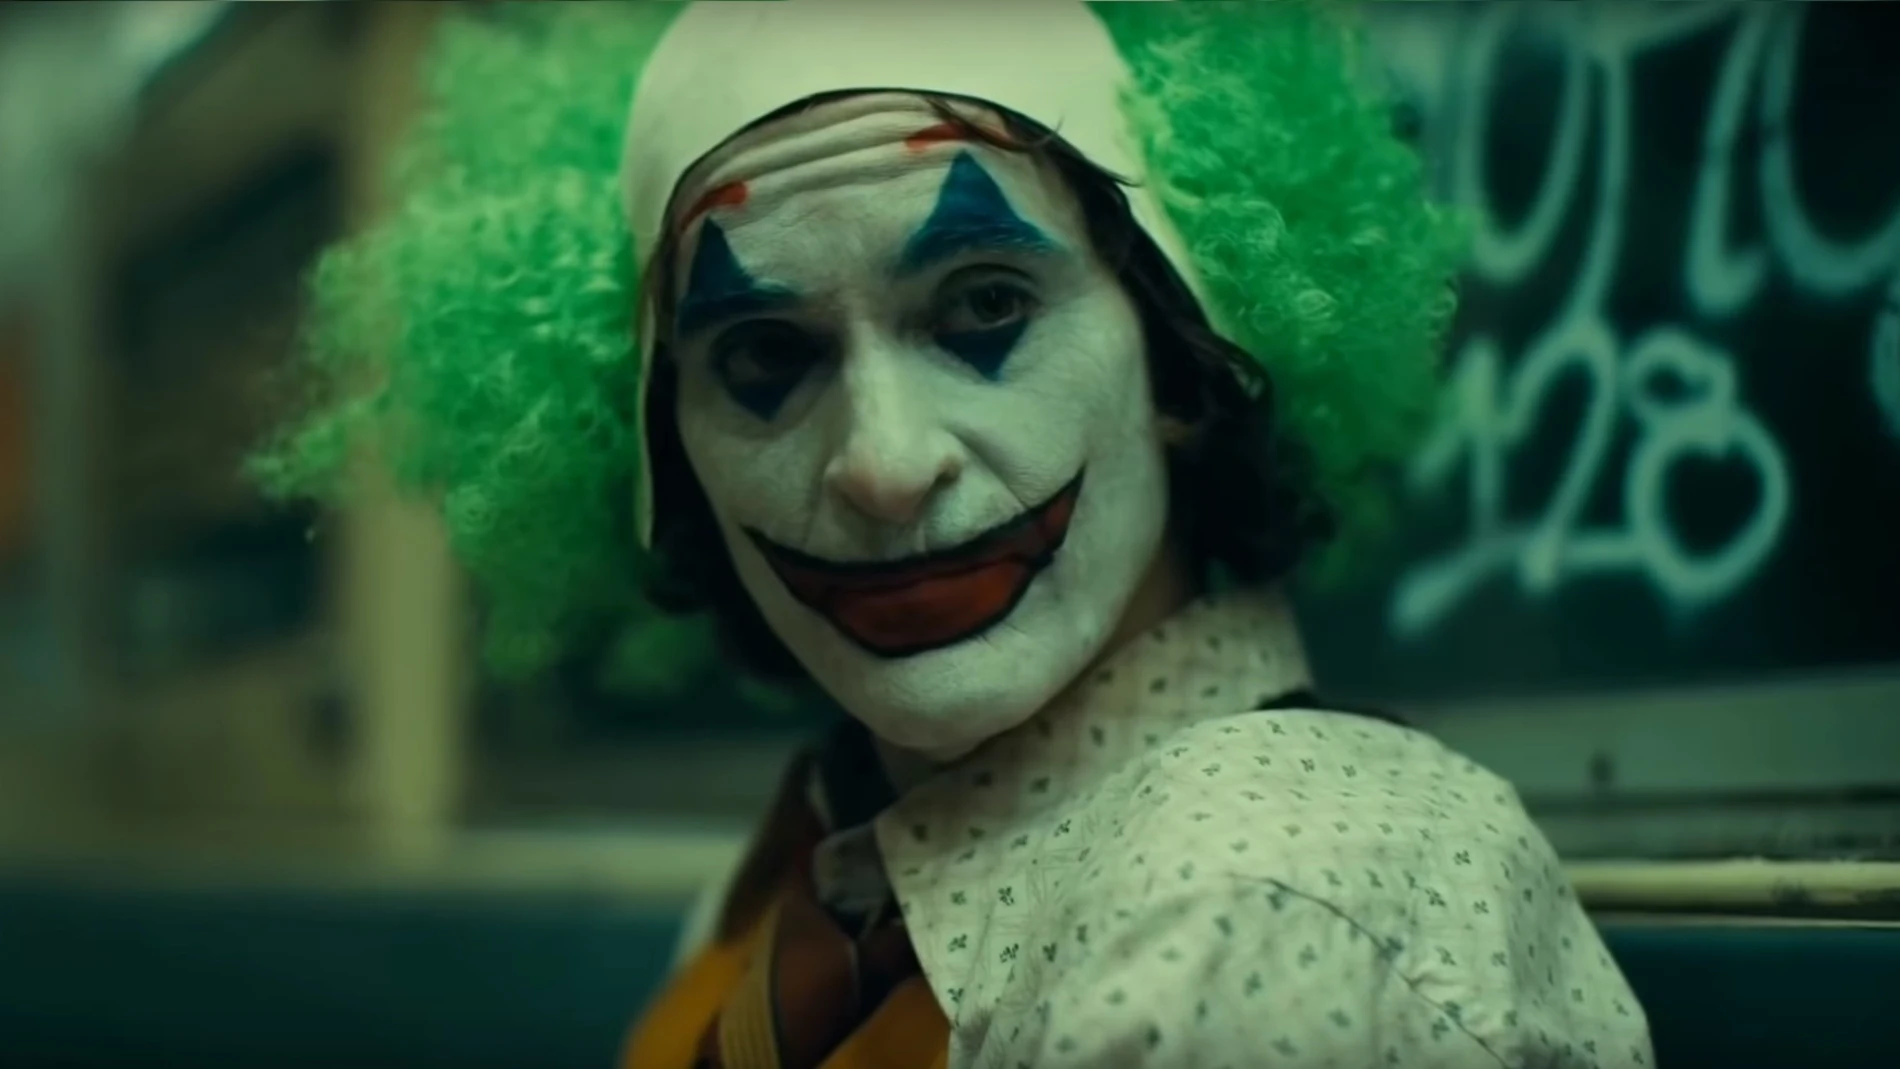 Cultura.- El guionista de 'Joker' se apunta al Salón del Cómic de València